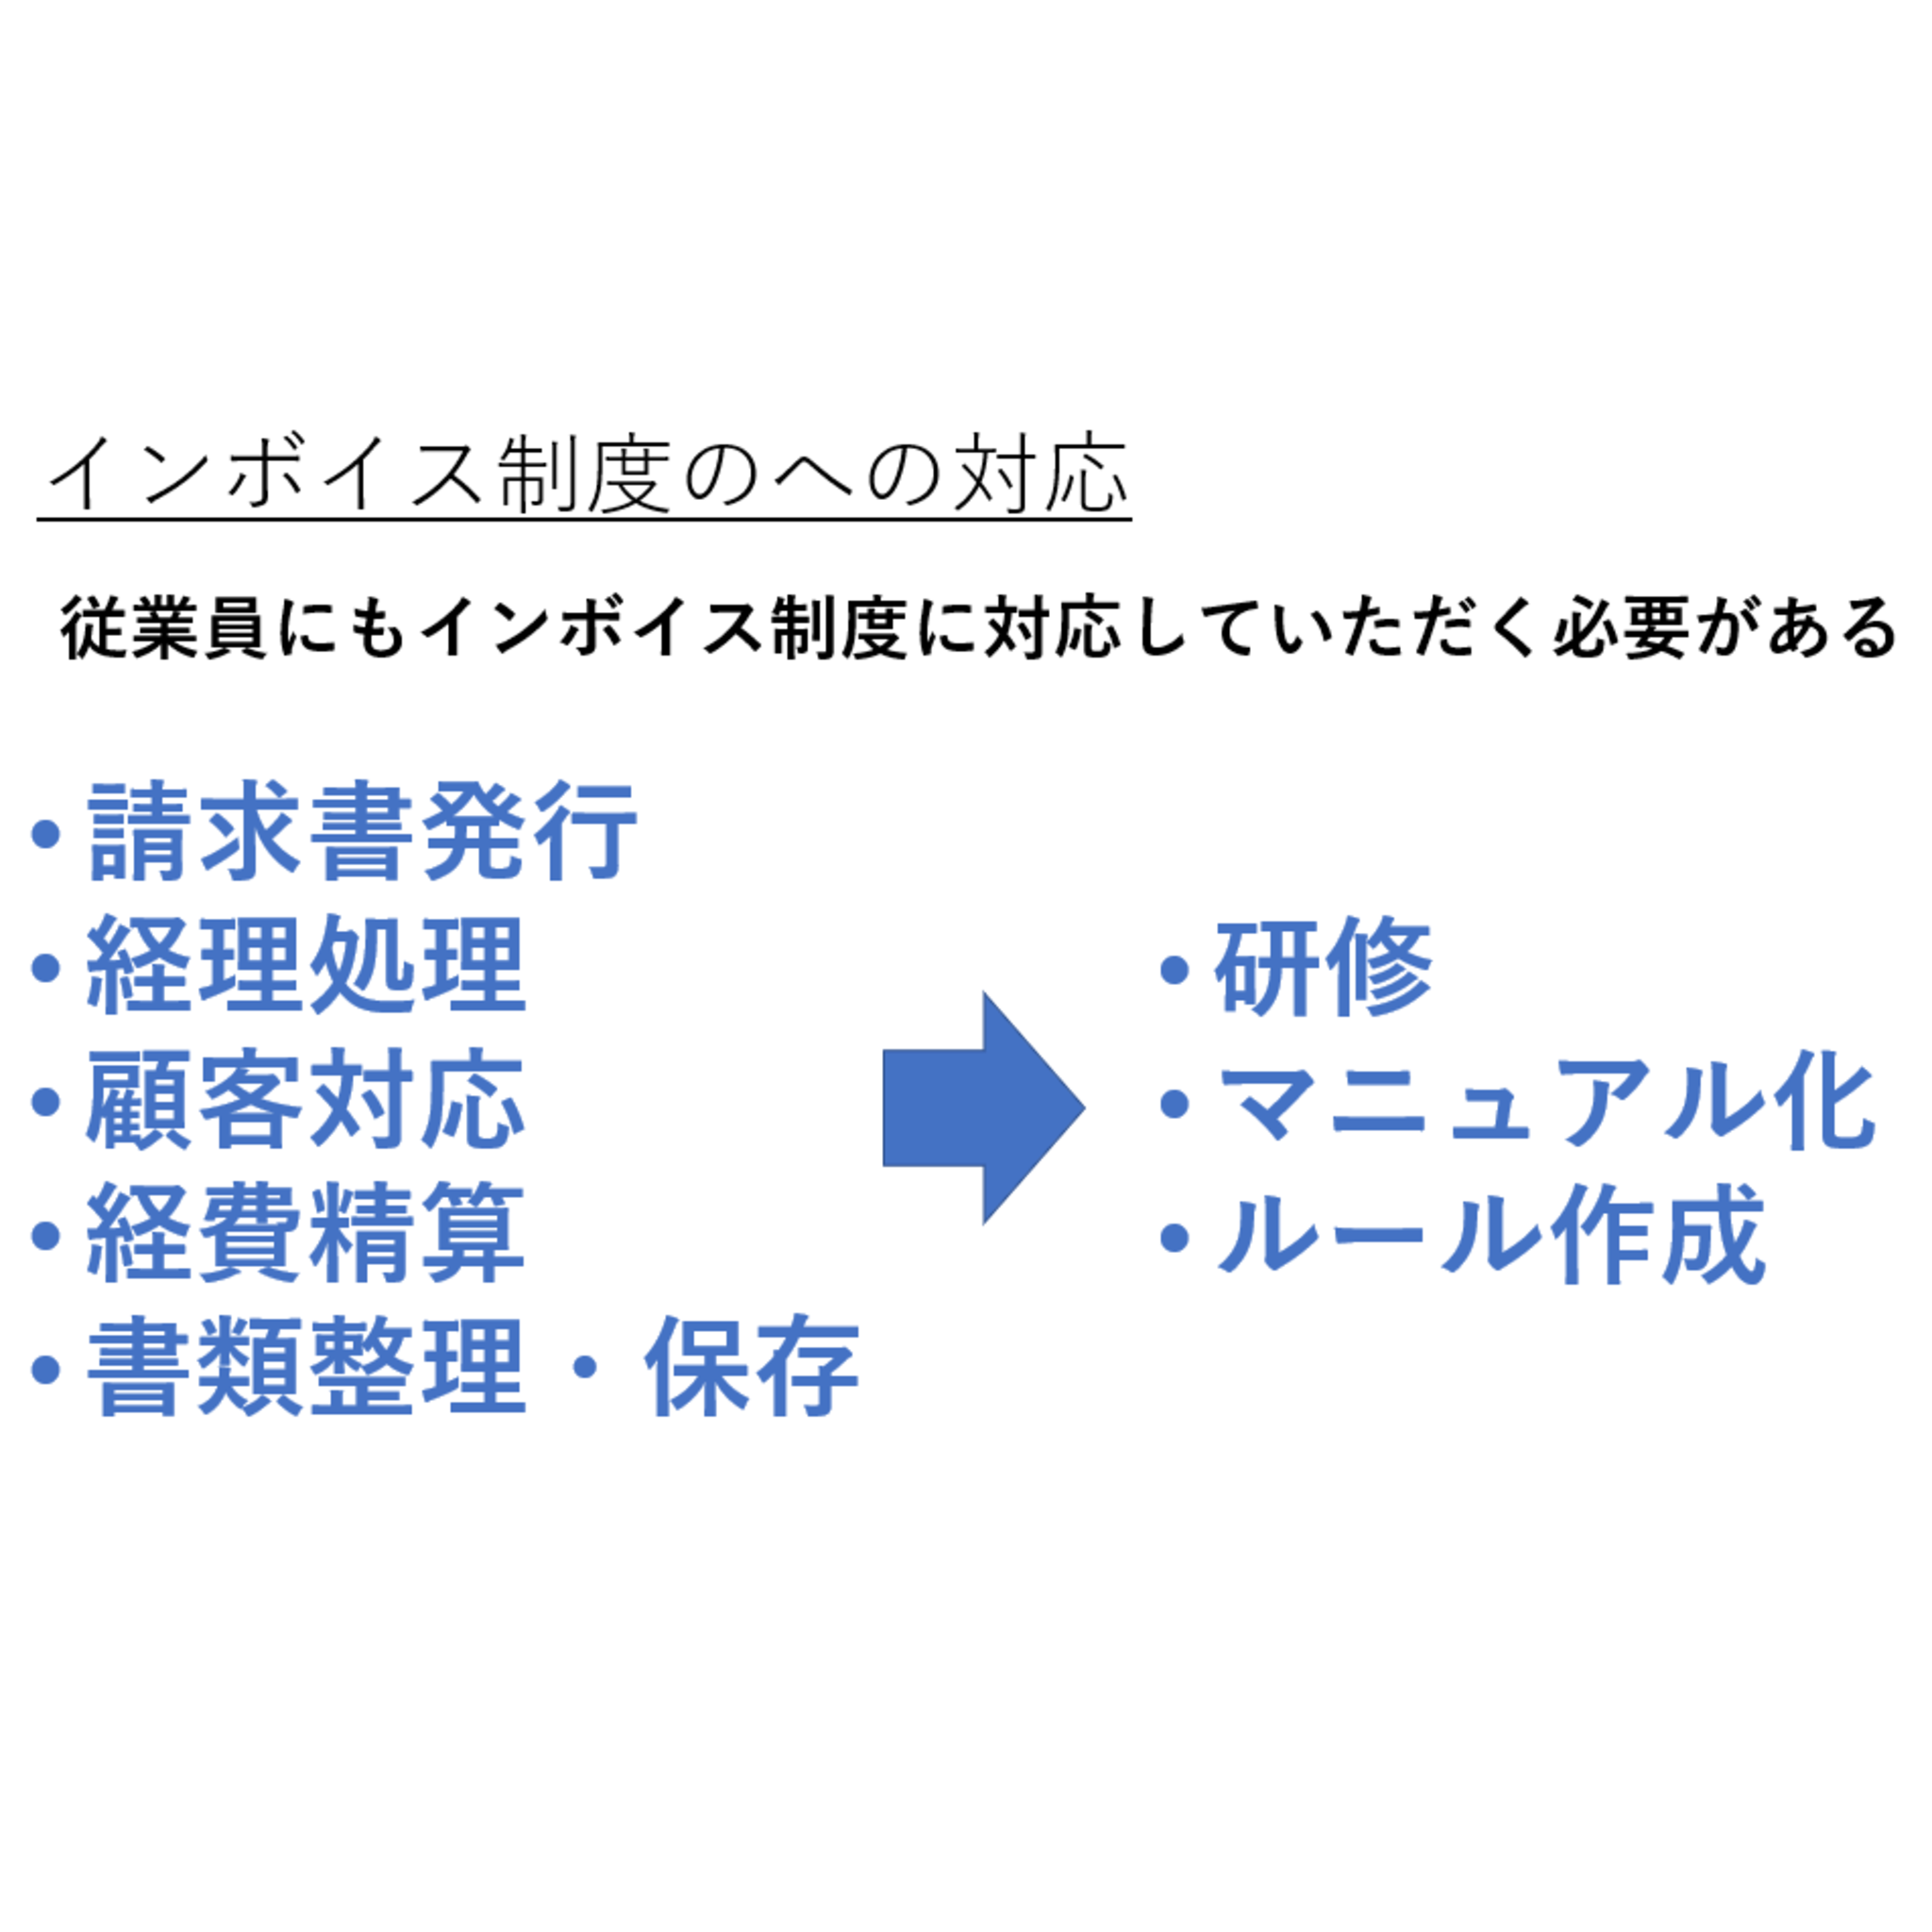 小松崎哲史税理士事務所からのお知らせ(インボイス制度への対応（従業員）)に関する写真